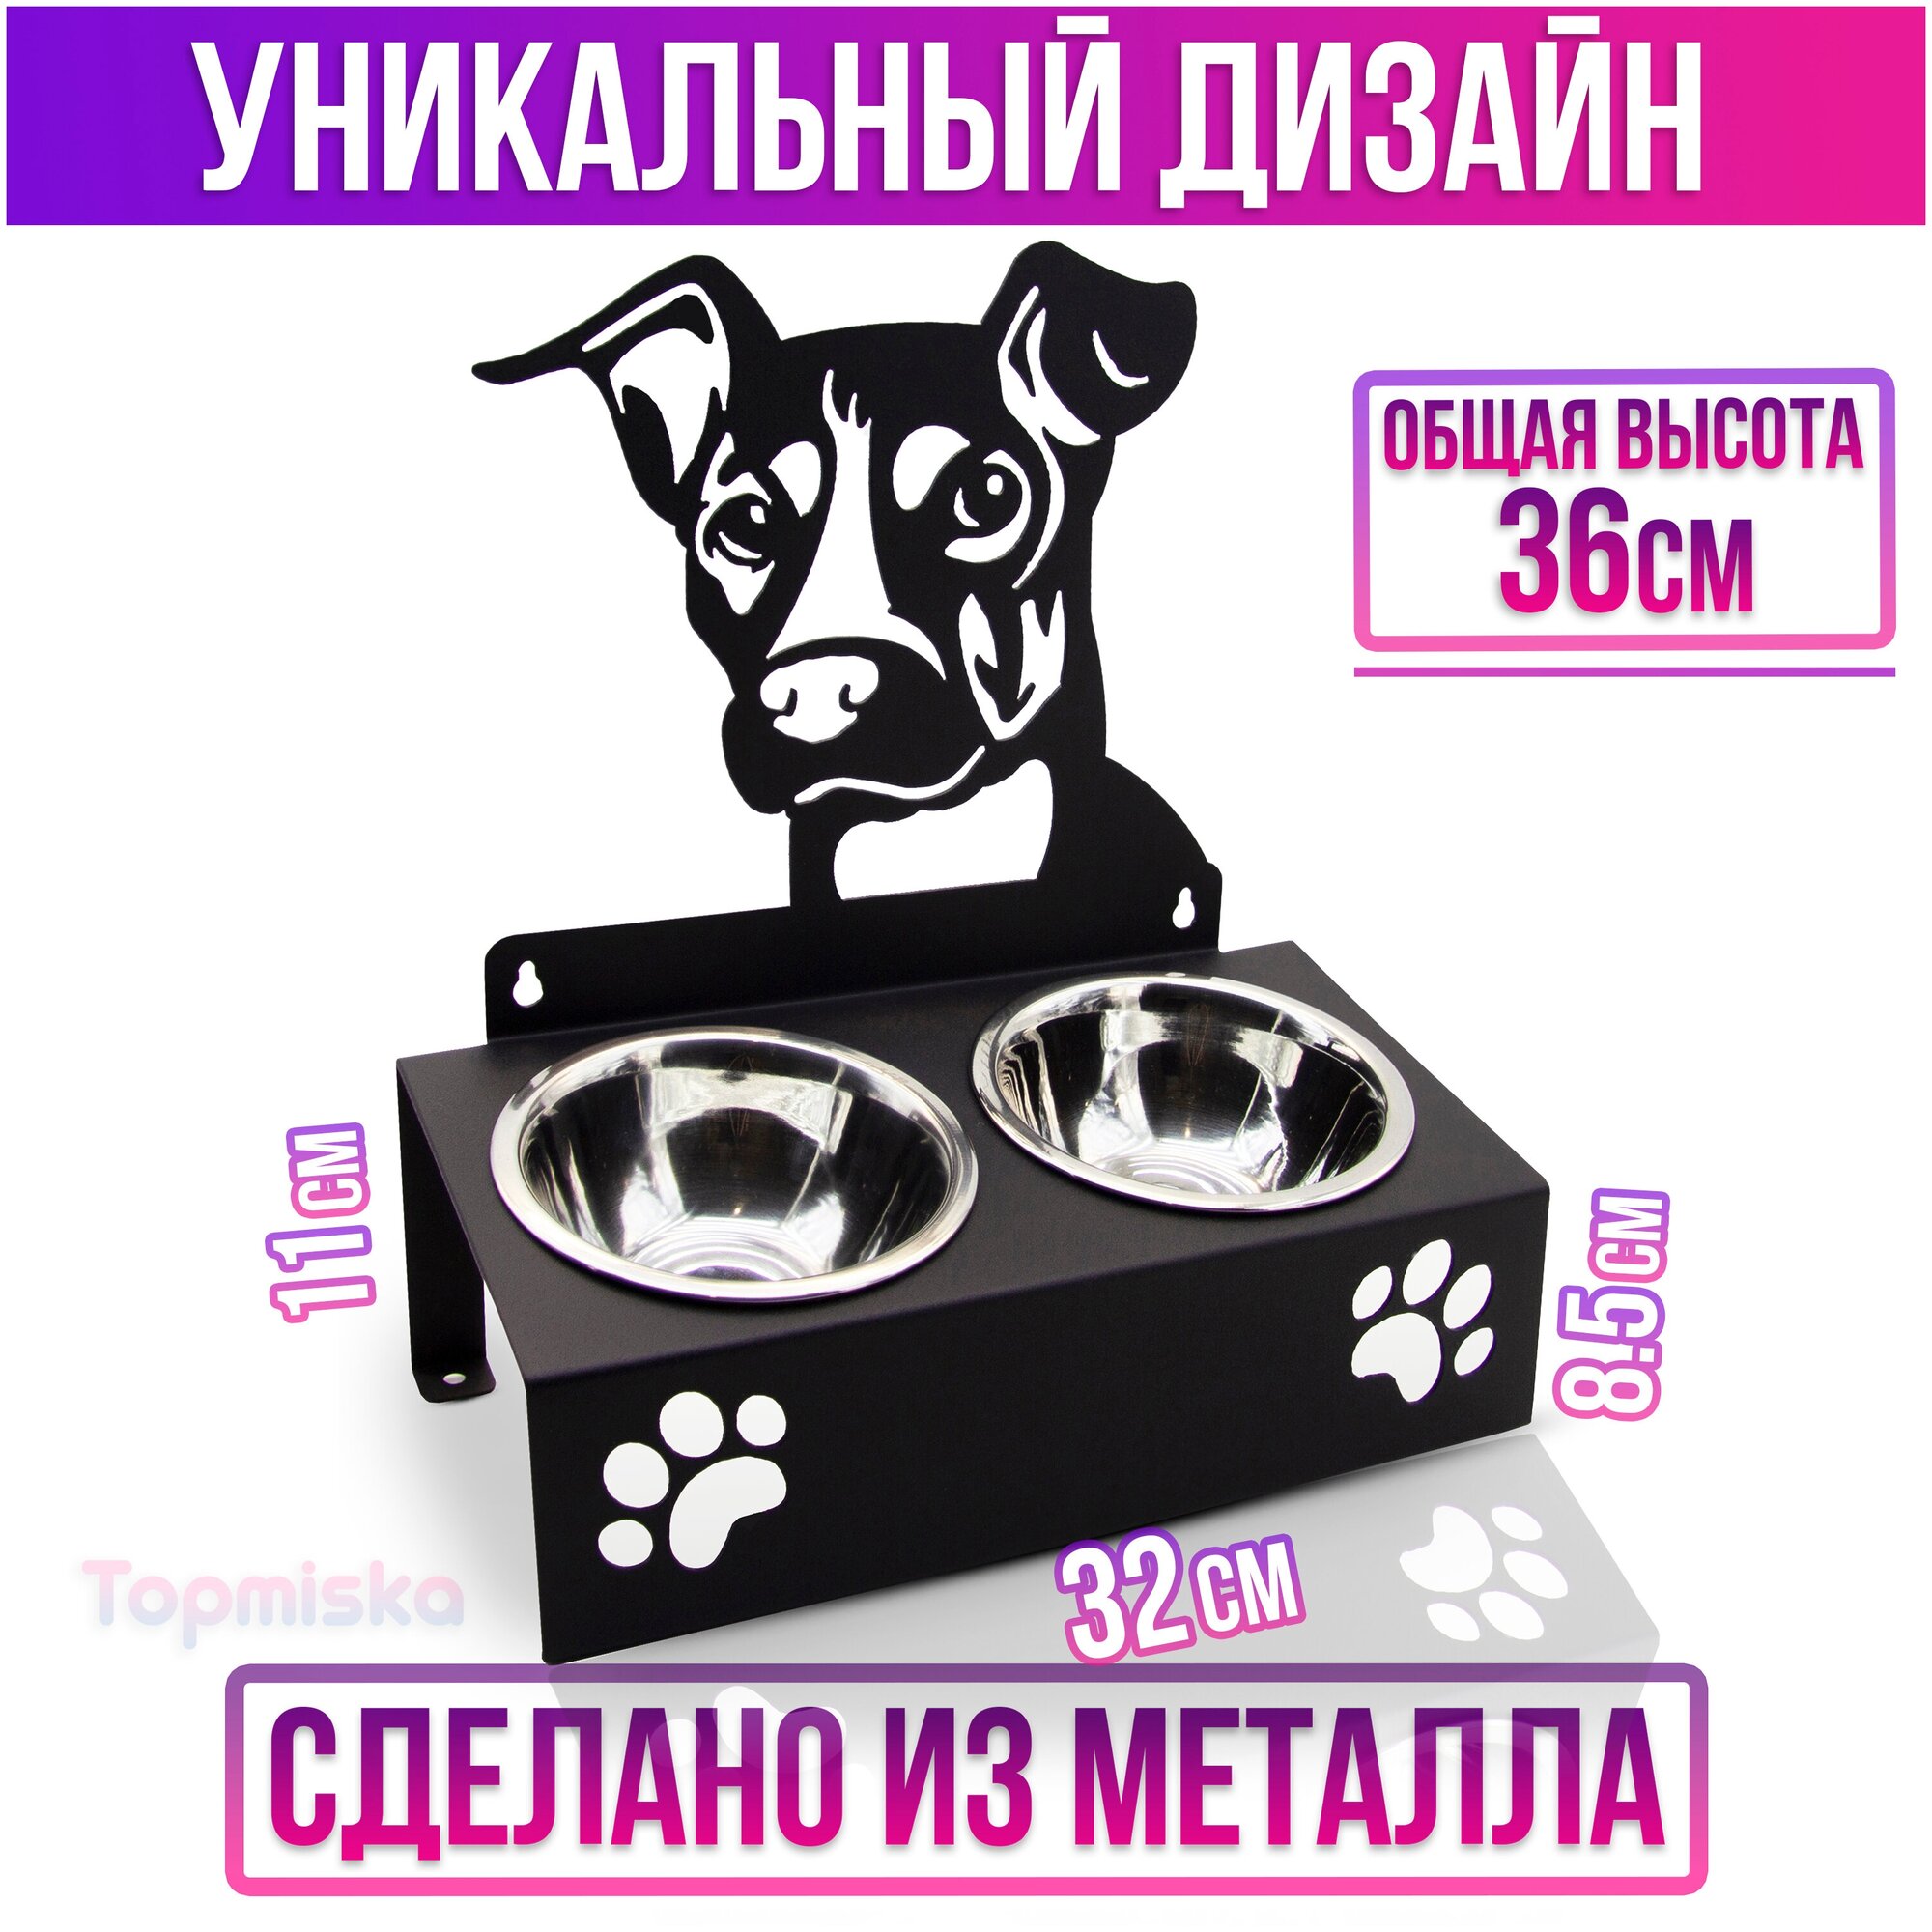 Подставка для мисок двойная с наклоном Topmiska, миски 2х300мл, изображение Джек рассел, цвет черный - фотография № 2